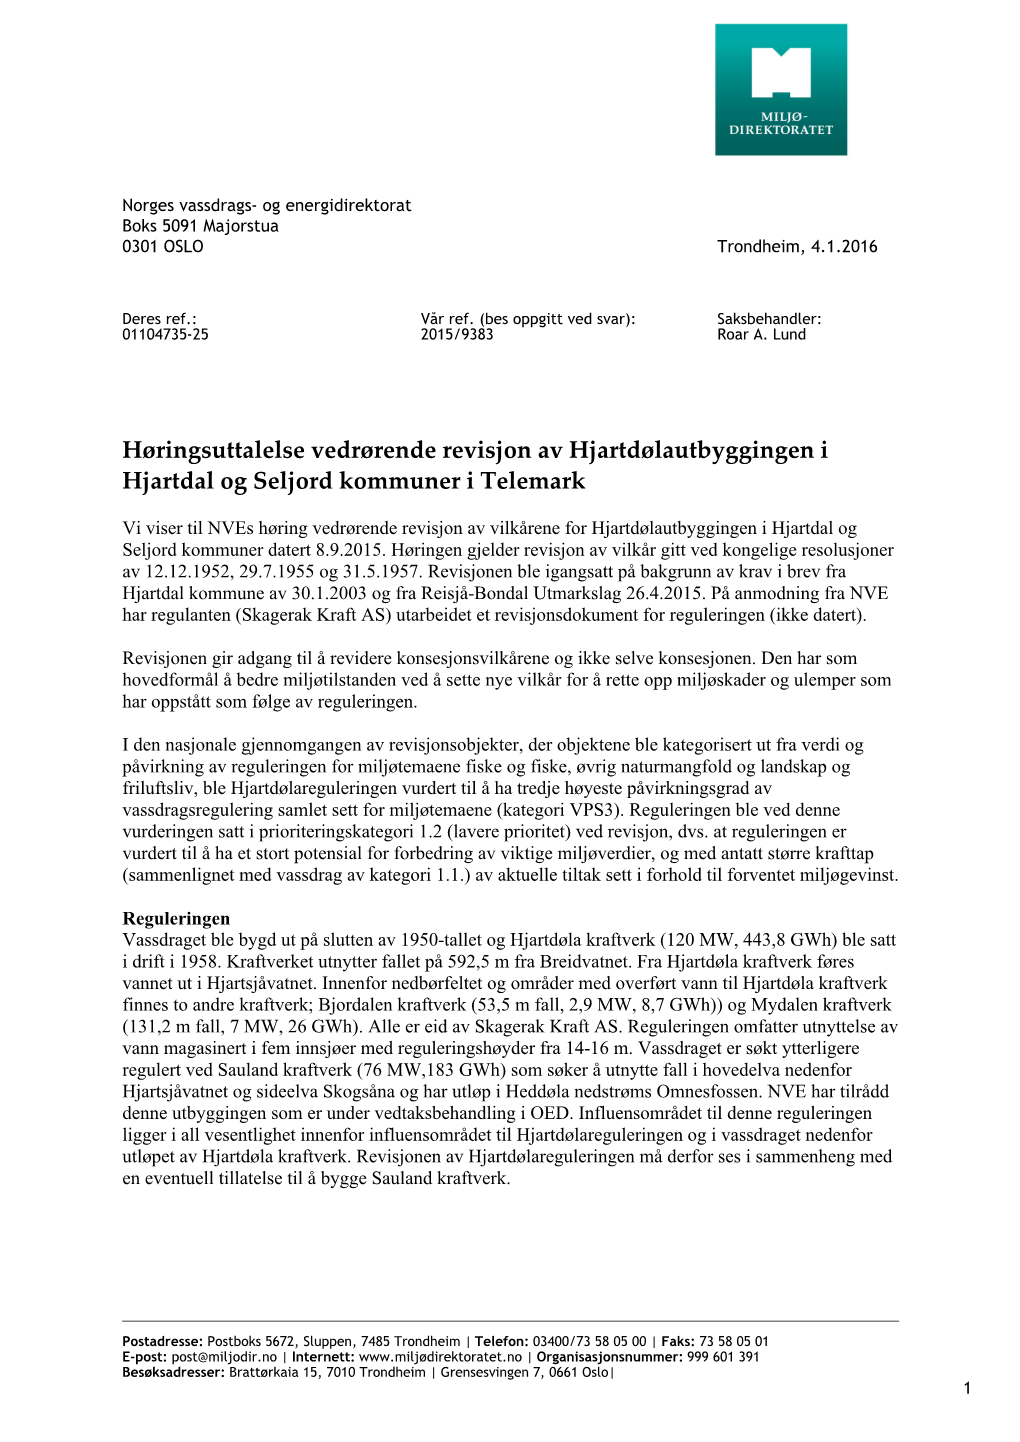 Høringsuttalelse Vedrørende Revisjon Av Hjartdølautbyggingen I Hjartdal Og Seljord Kommuner I Telemark